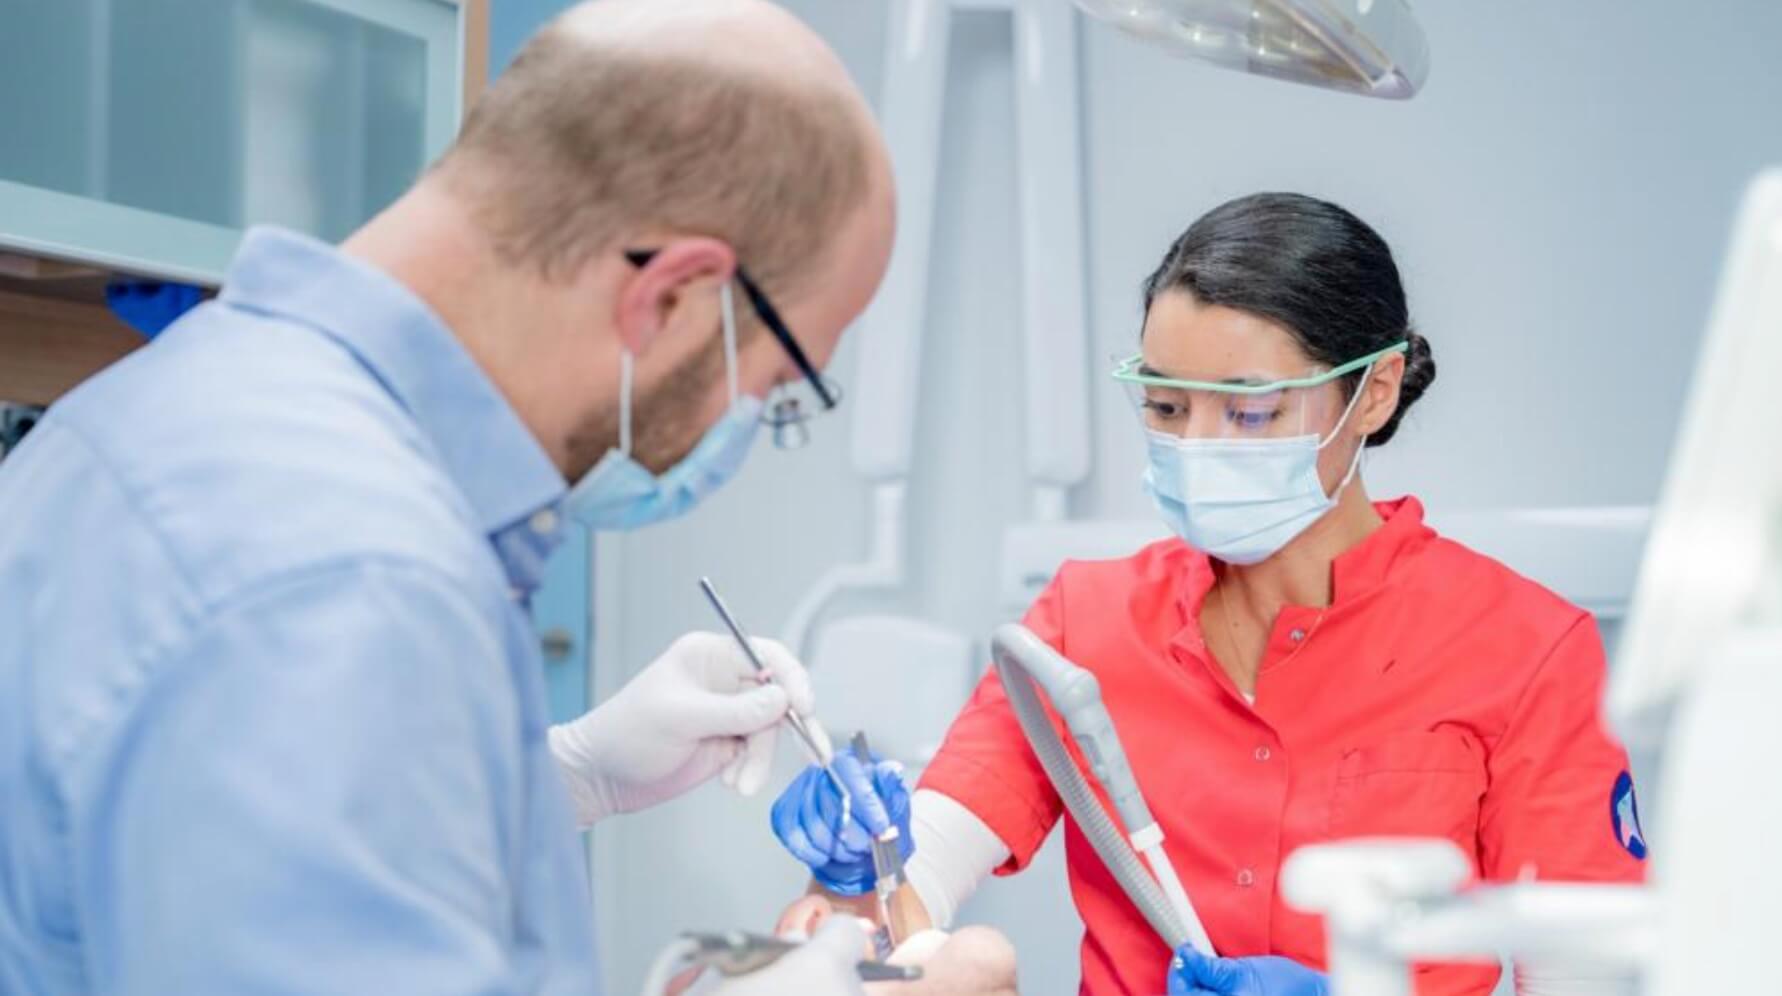 Laserbehandelingen in de tandheelkunde